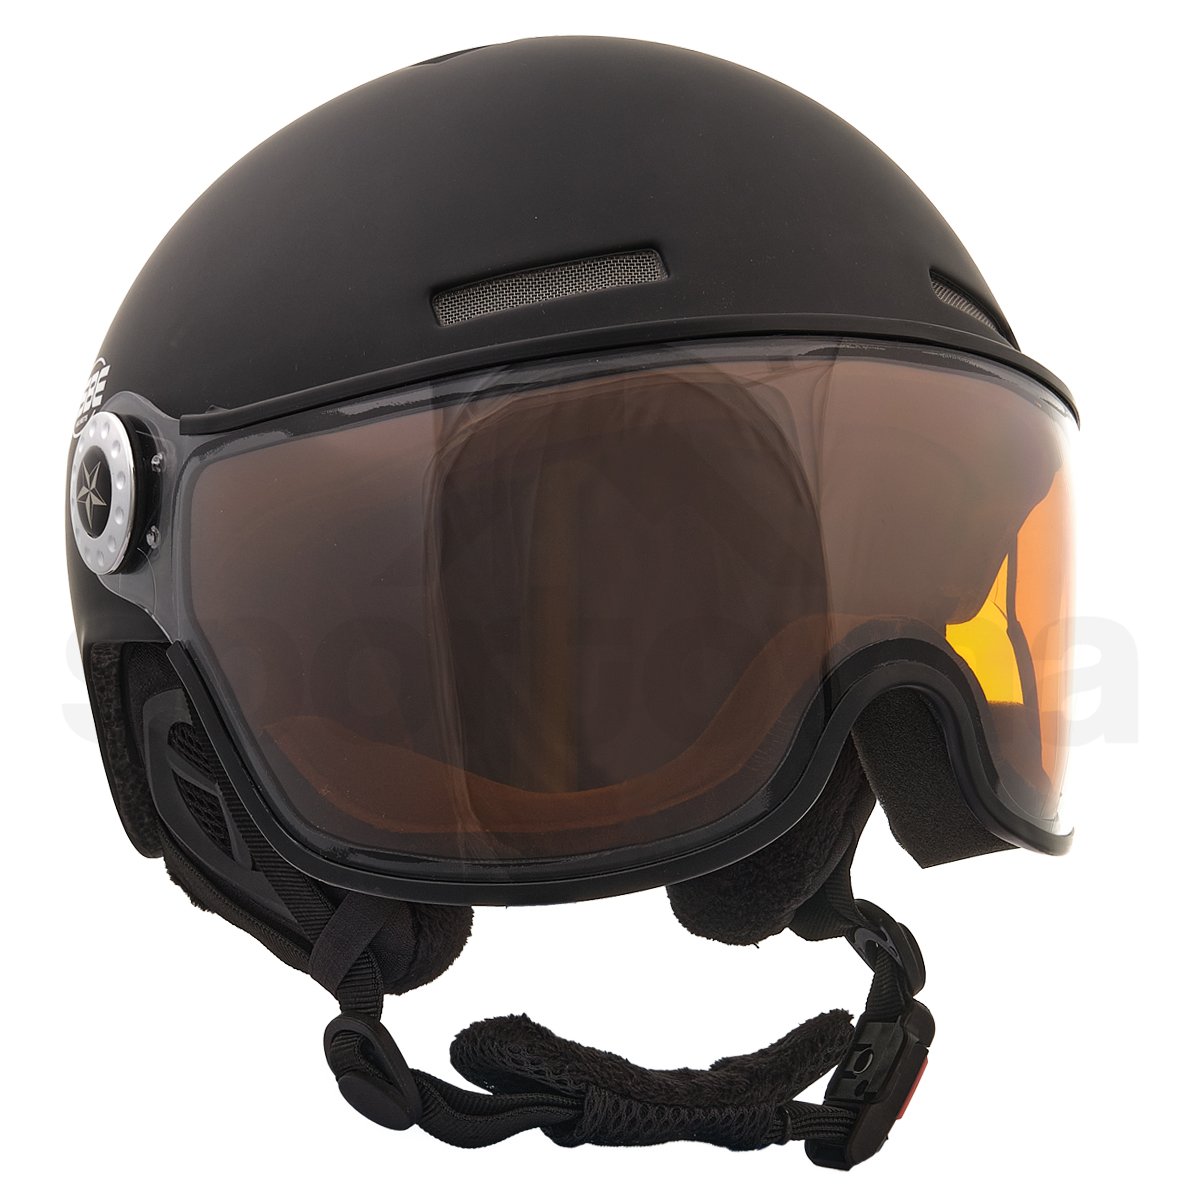 Lyžařská helma Osbe New Light - černá